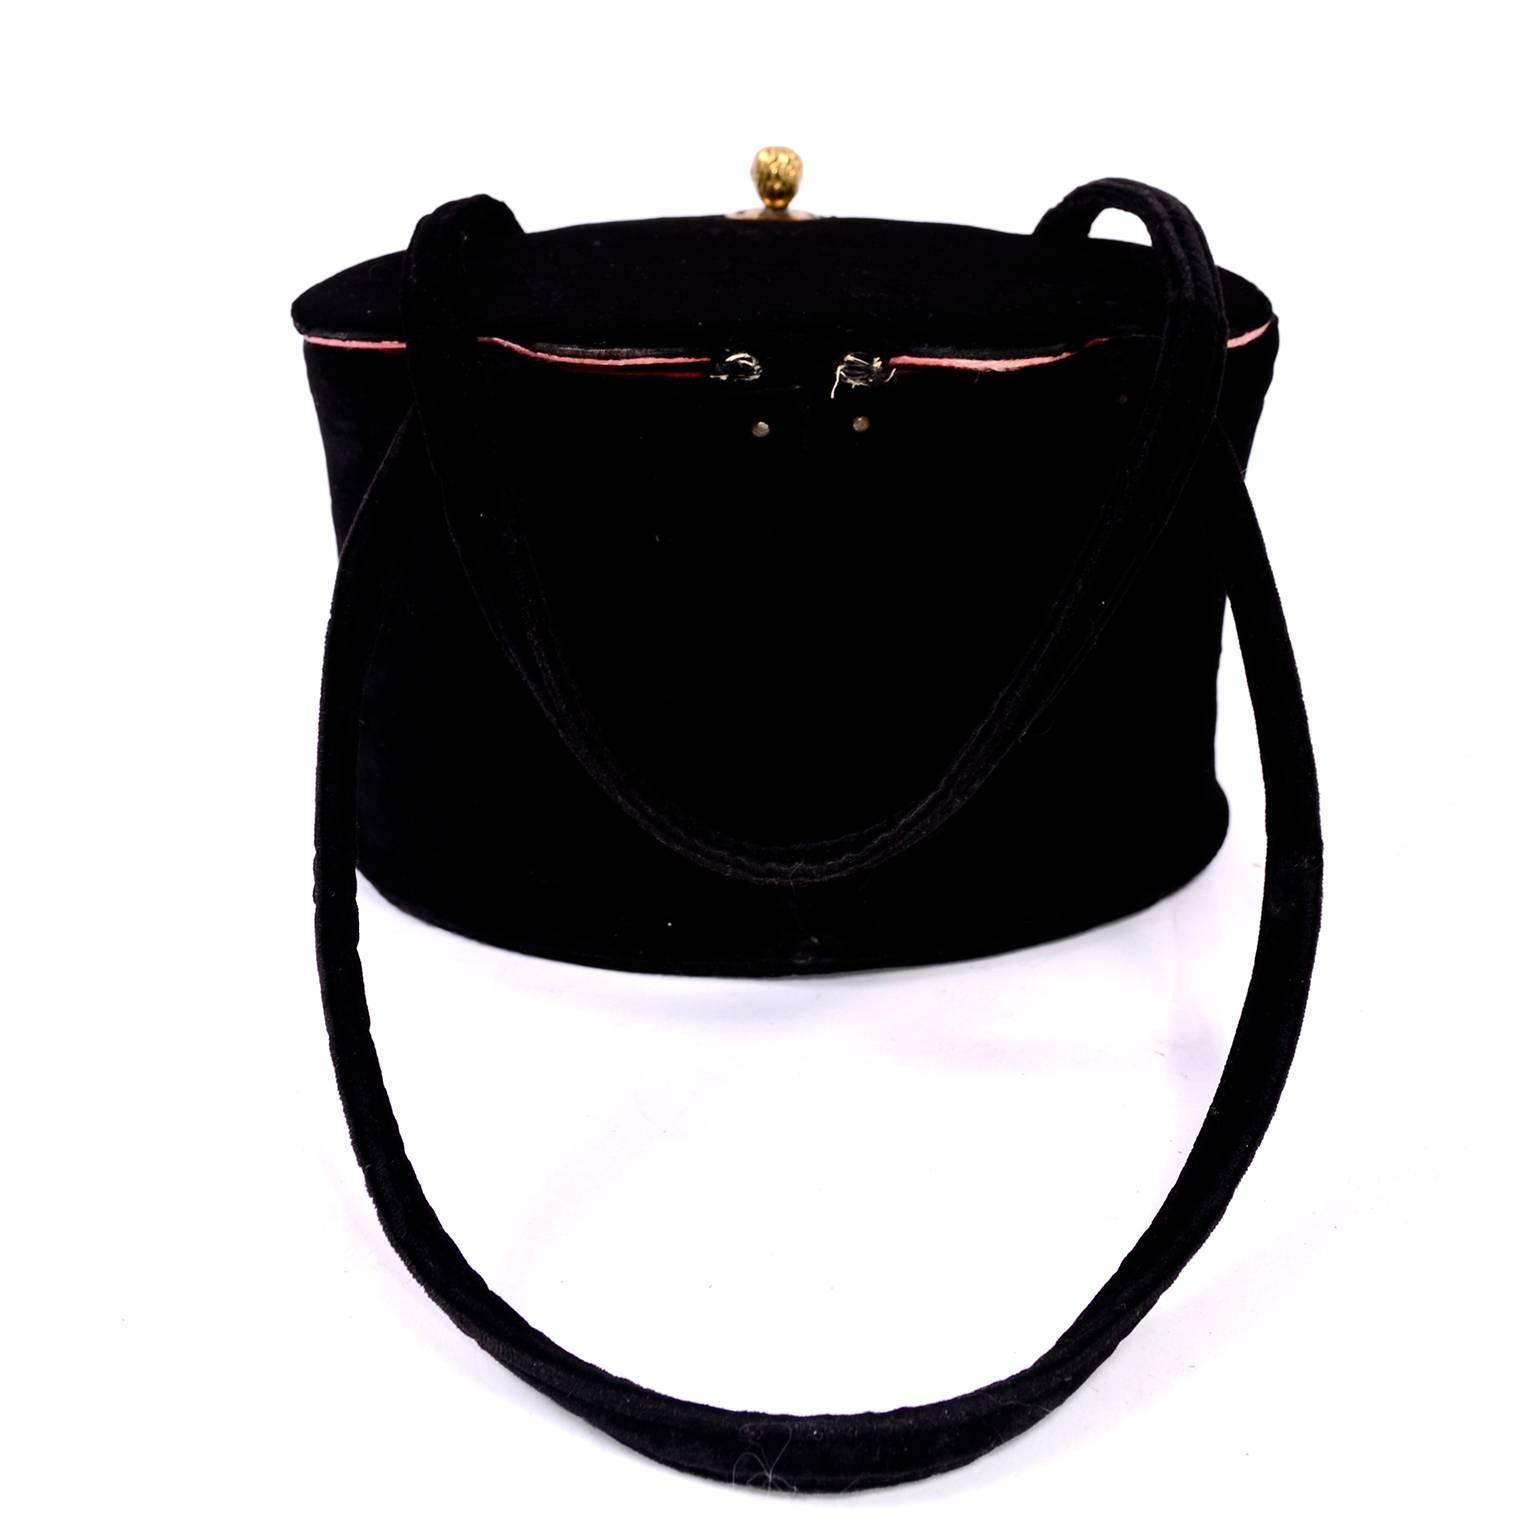 Seltene zusammenklappbare Koret Vintage-Handtasche aus den 1940er Jahren in schwarzem Samt mit einzigartigem Gesichtsverschluss (Schwarz)